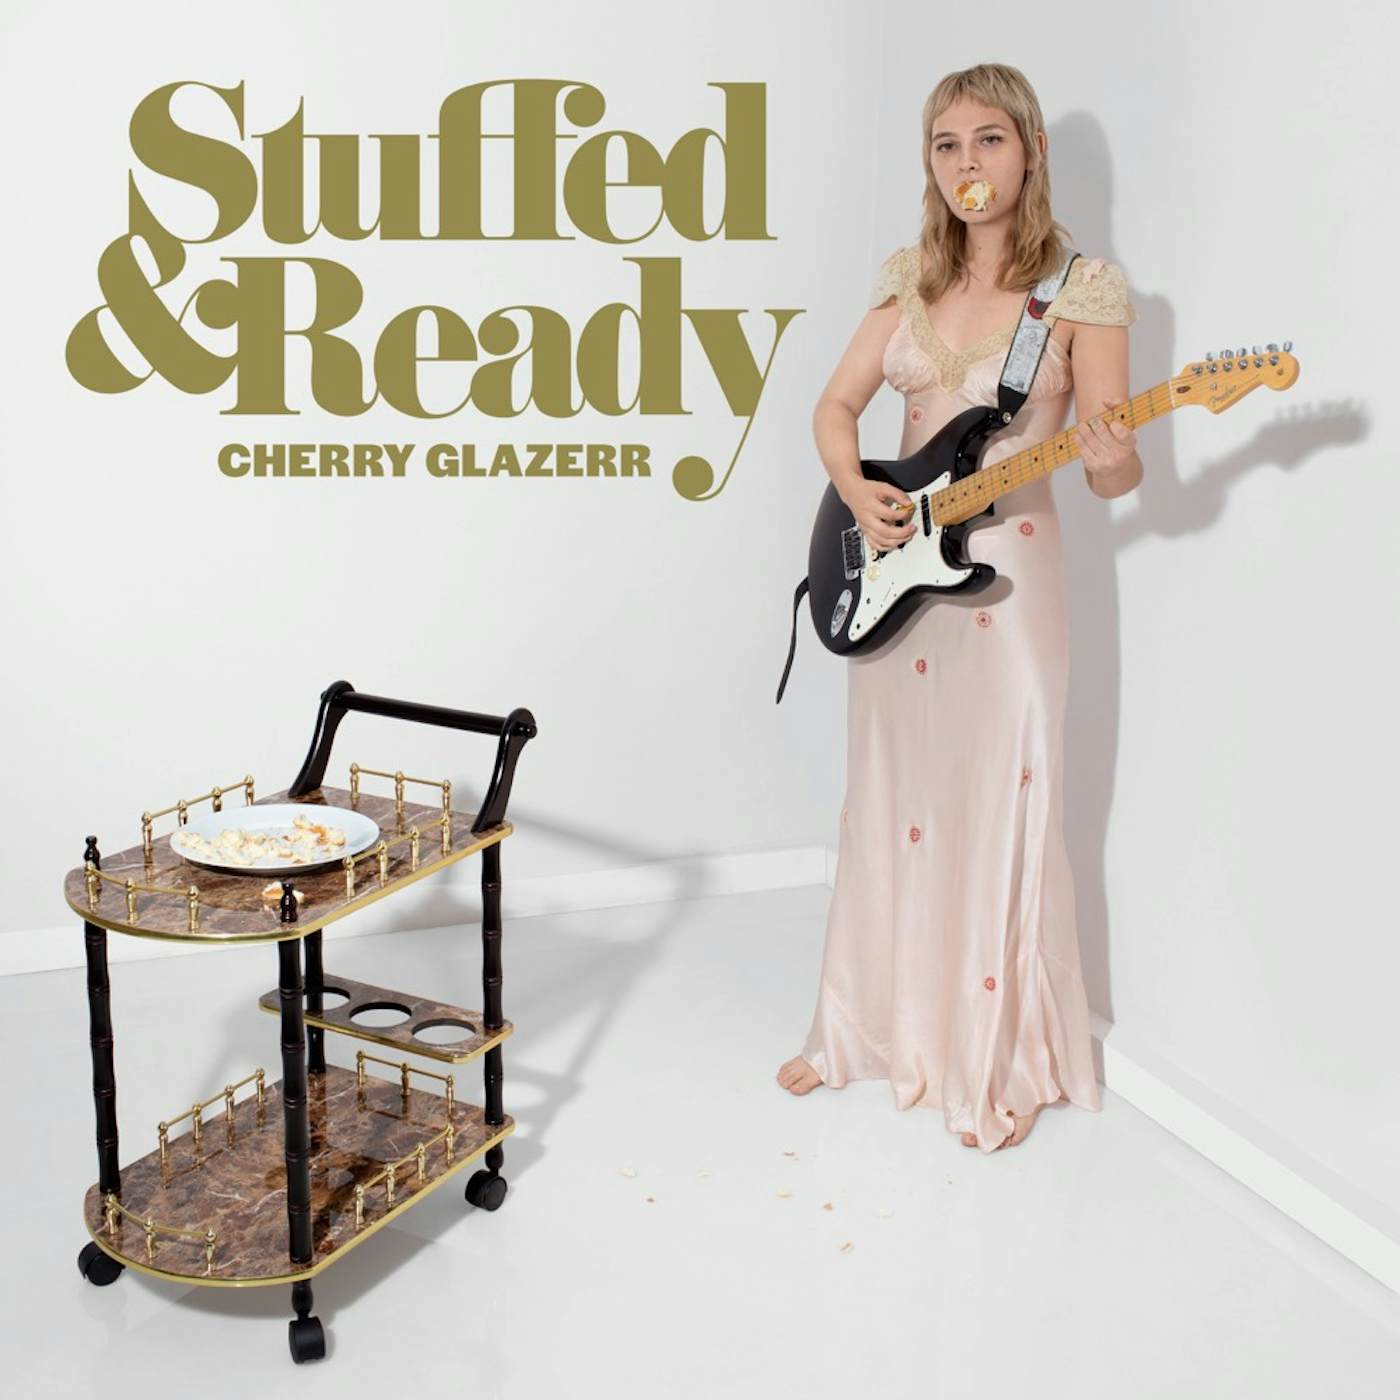 Cherry Glazerr Stuffed & Ready Vinyl Record